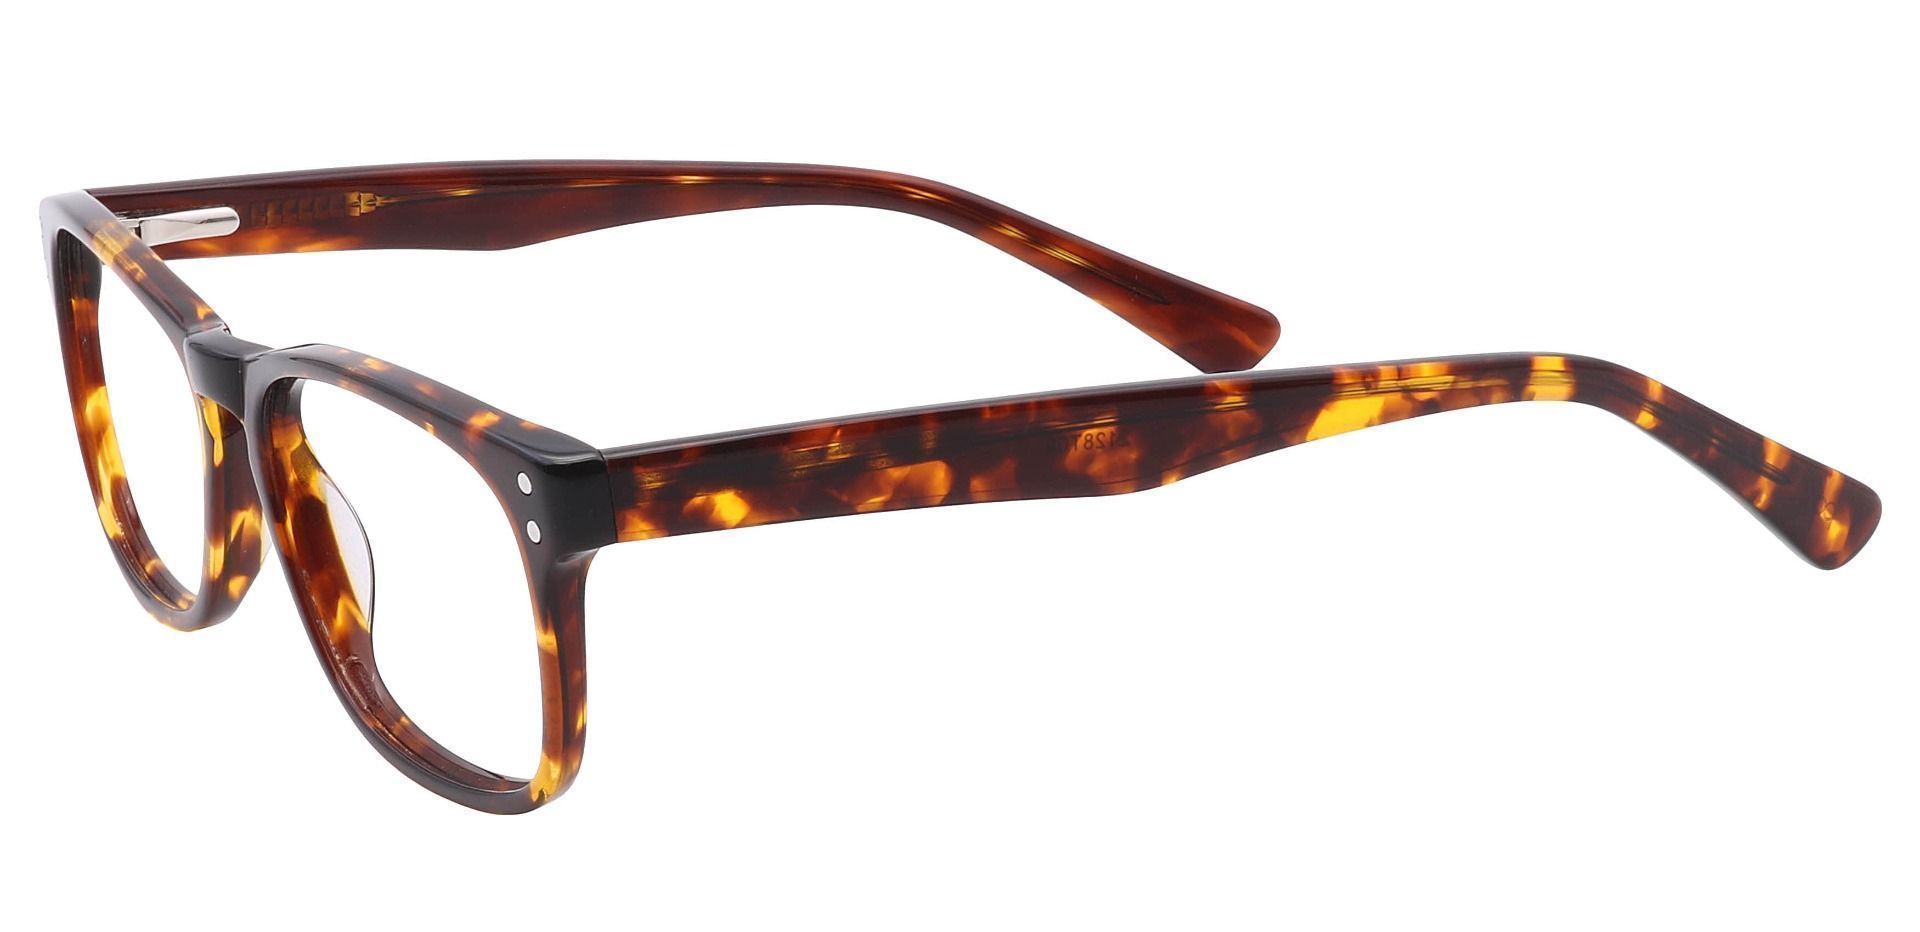 Morris Rectangle Eyeglasses Frame - Tortoise